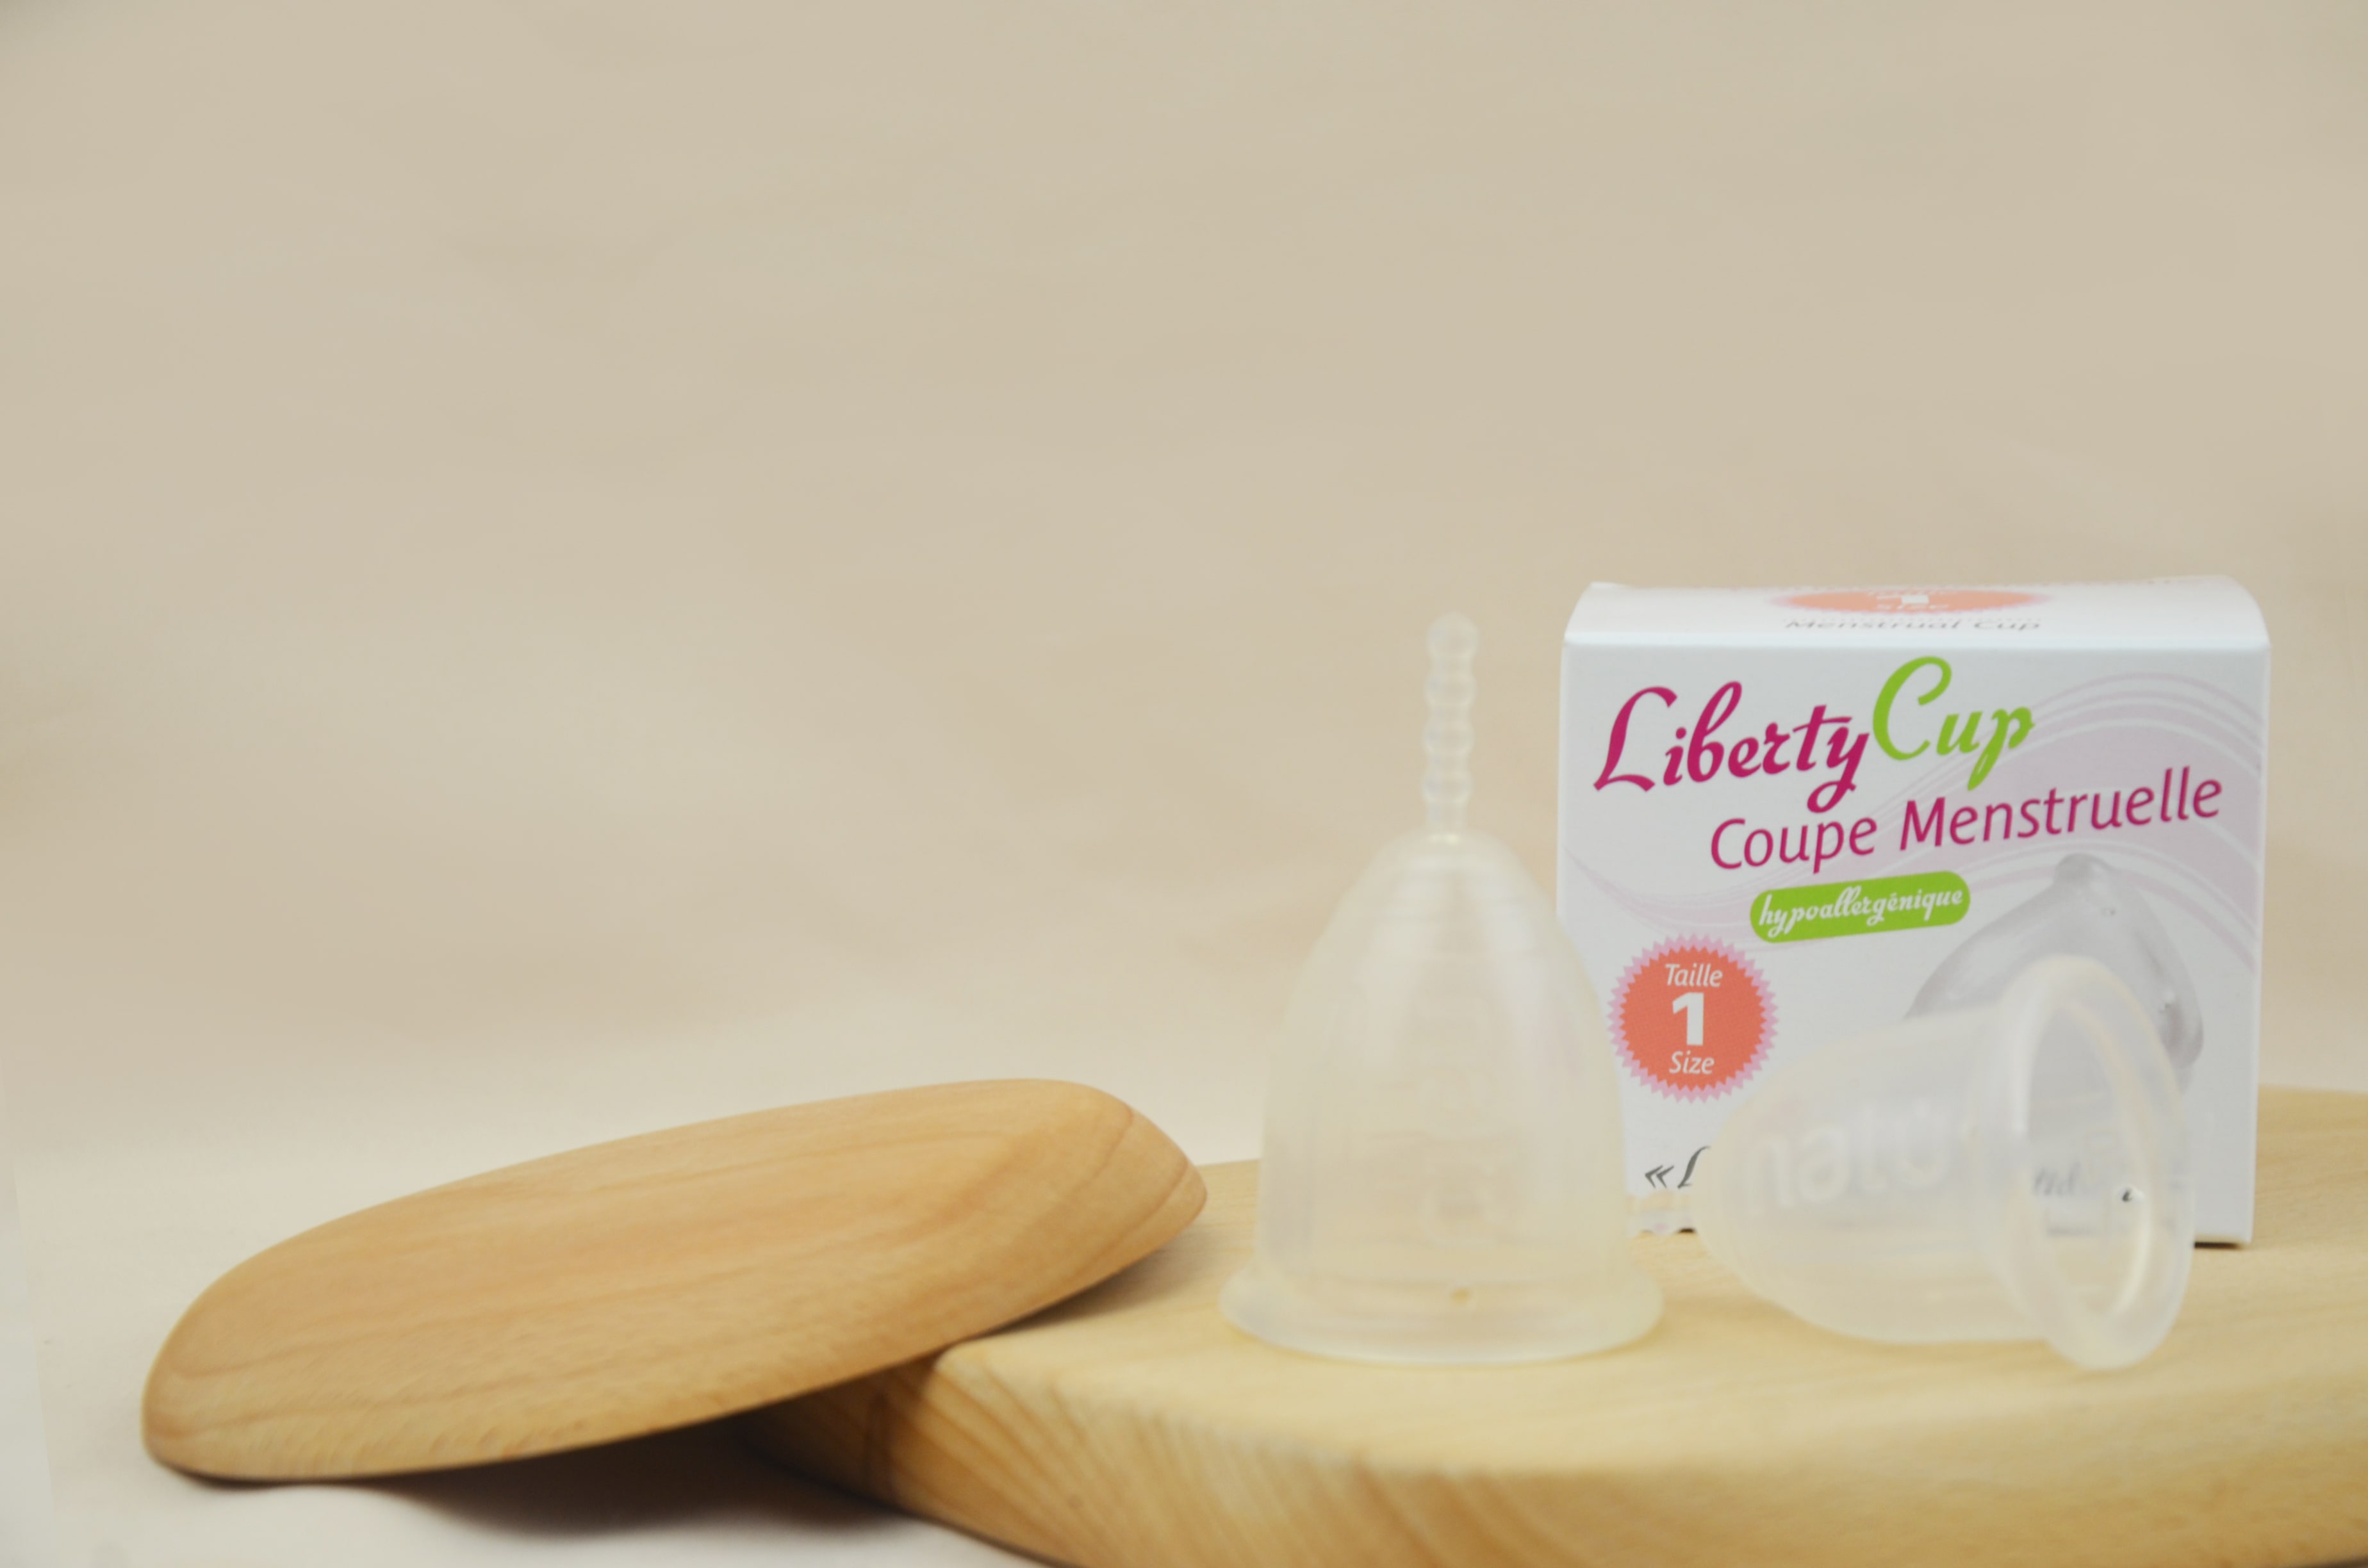 Cốc nguyệt san Liberty Cup được làm từ 100% silicone y tế cao cấp, an toàn tuyệt đối khi đưa vào trong cơ thể